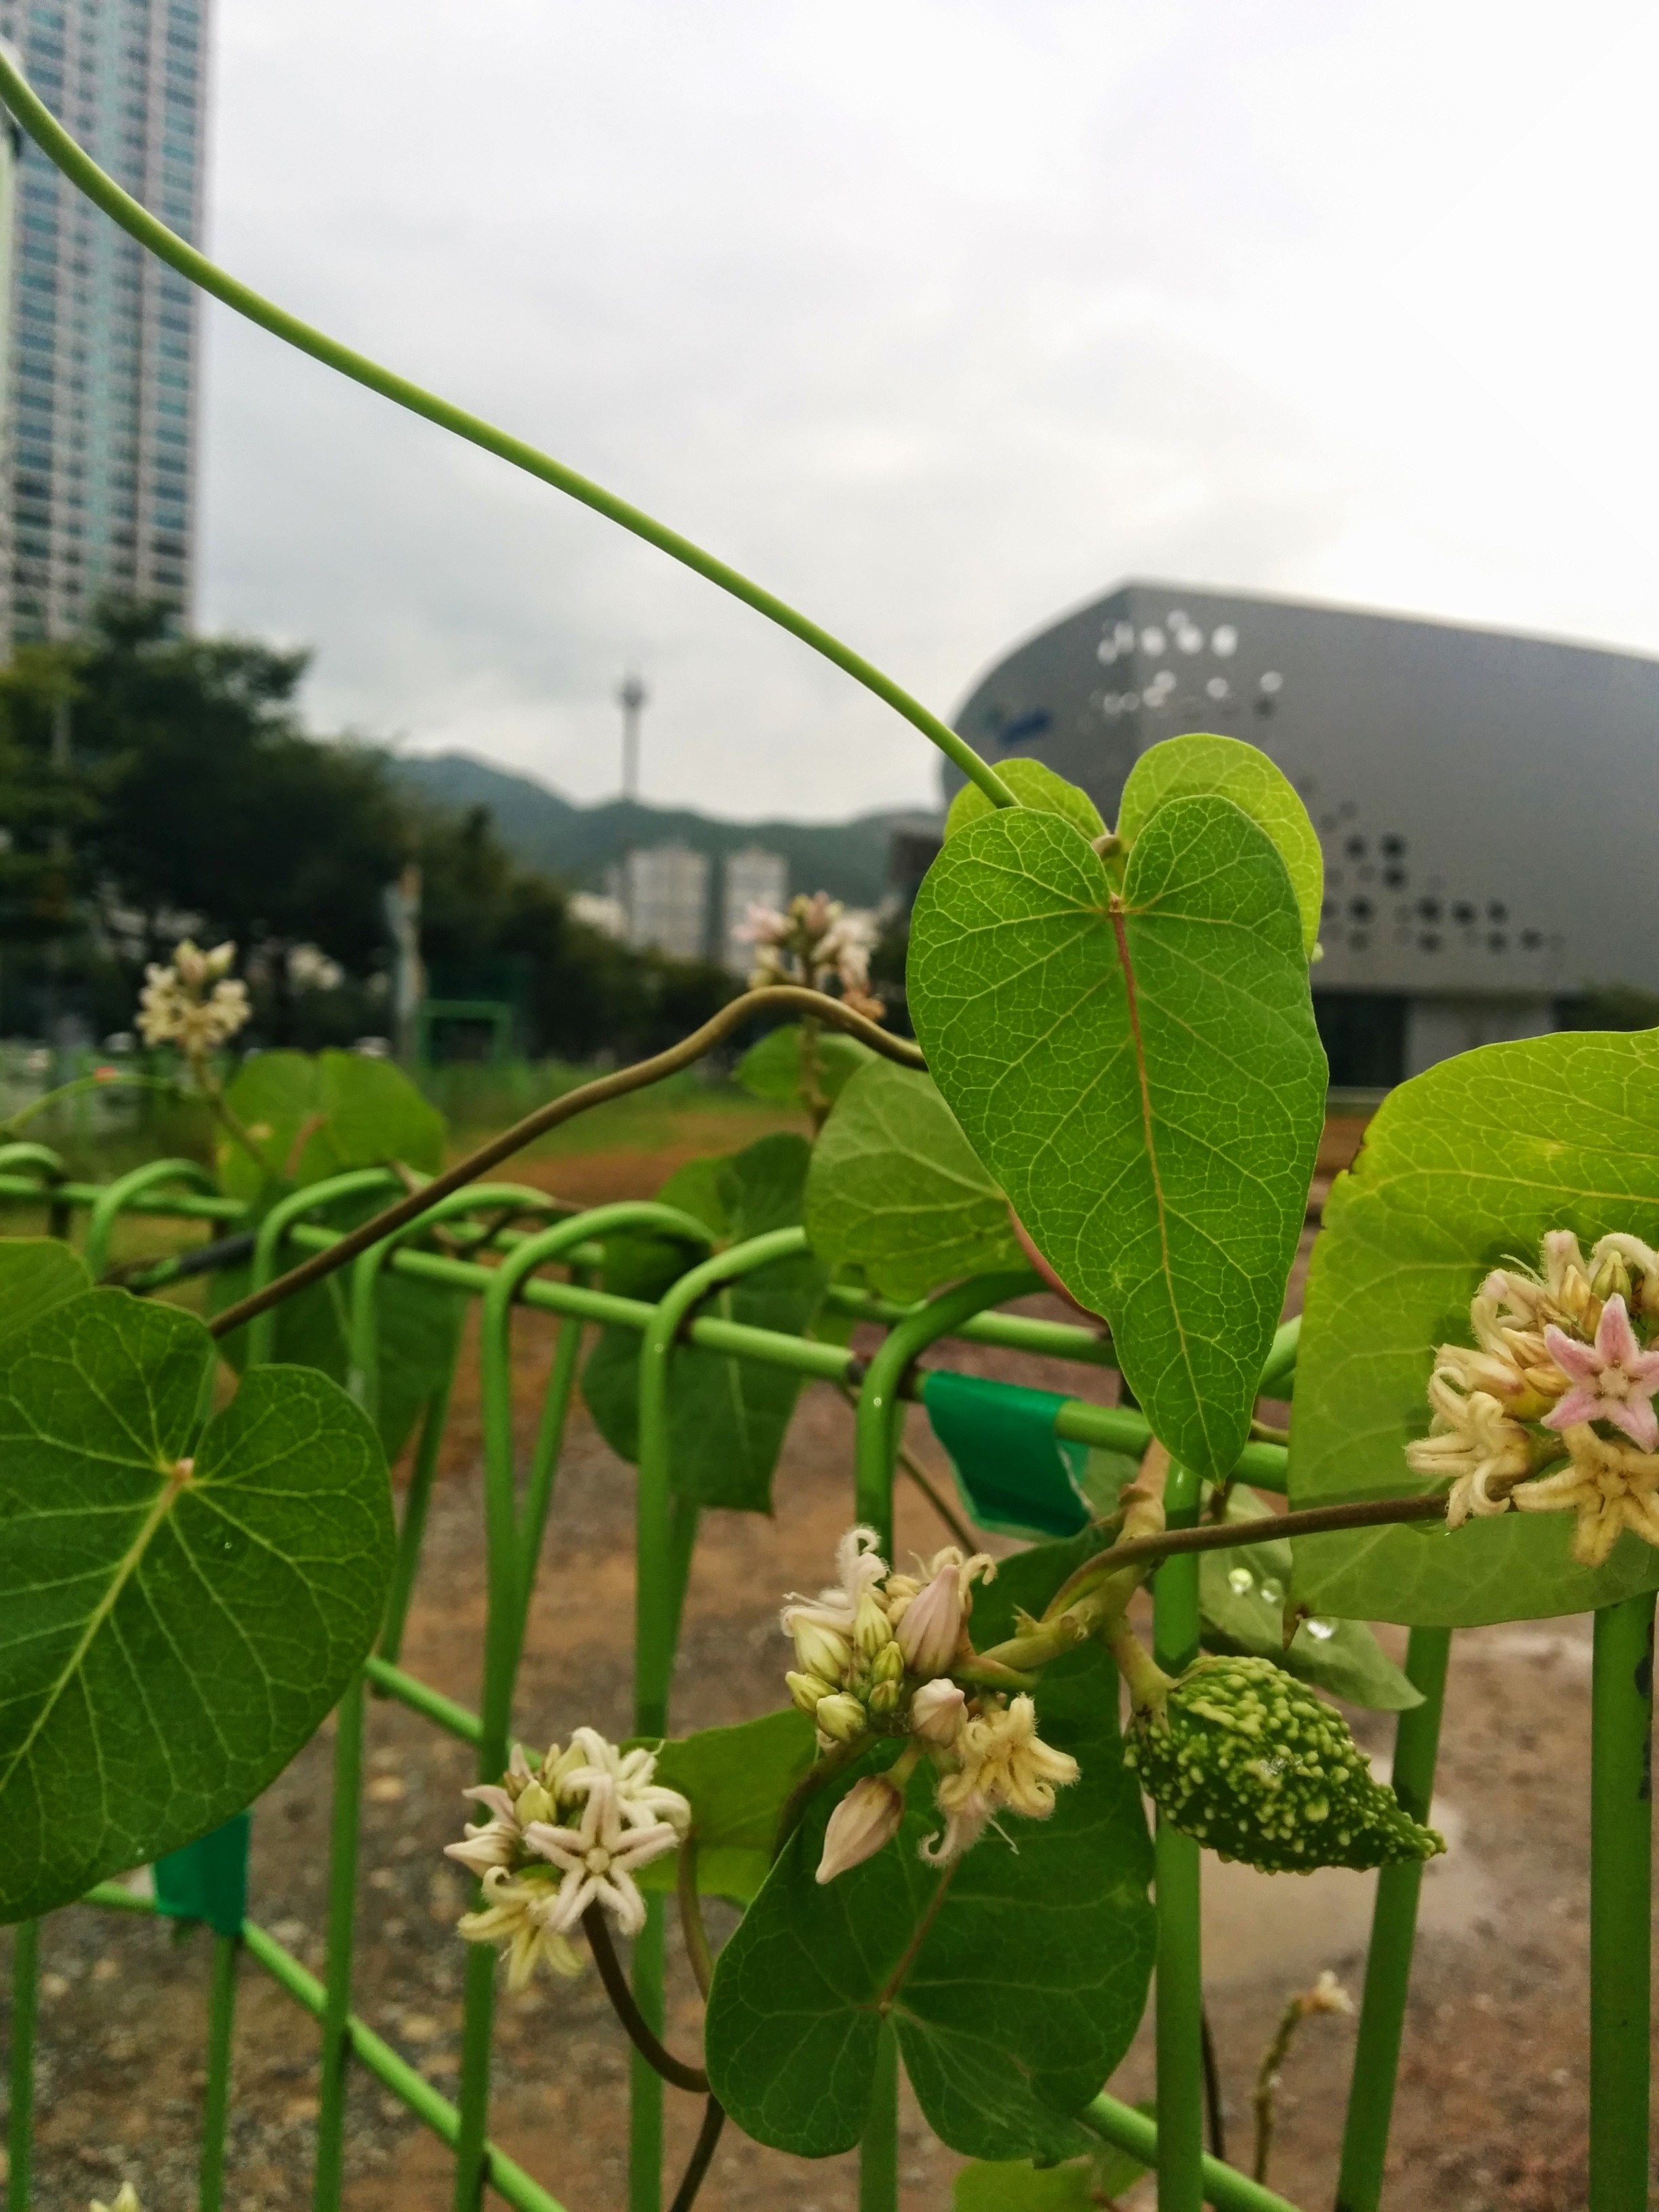 IMG_20140811_081652.jpg 공사장 울타리에서 꽃을 피우고 열매를 맺은 박주가리 덩굴